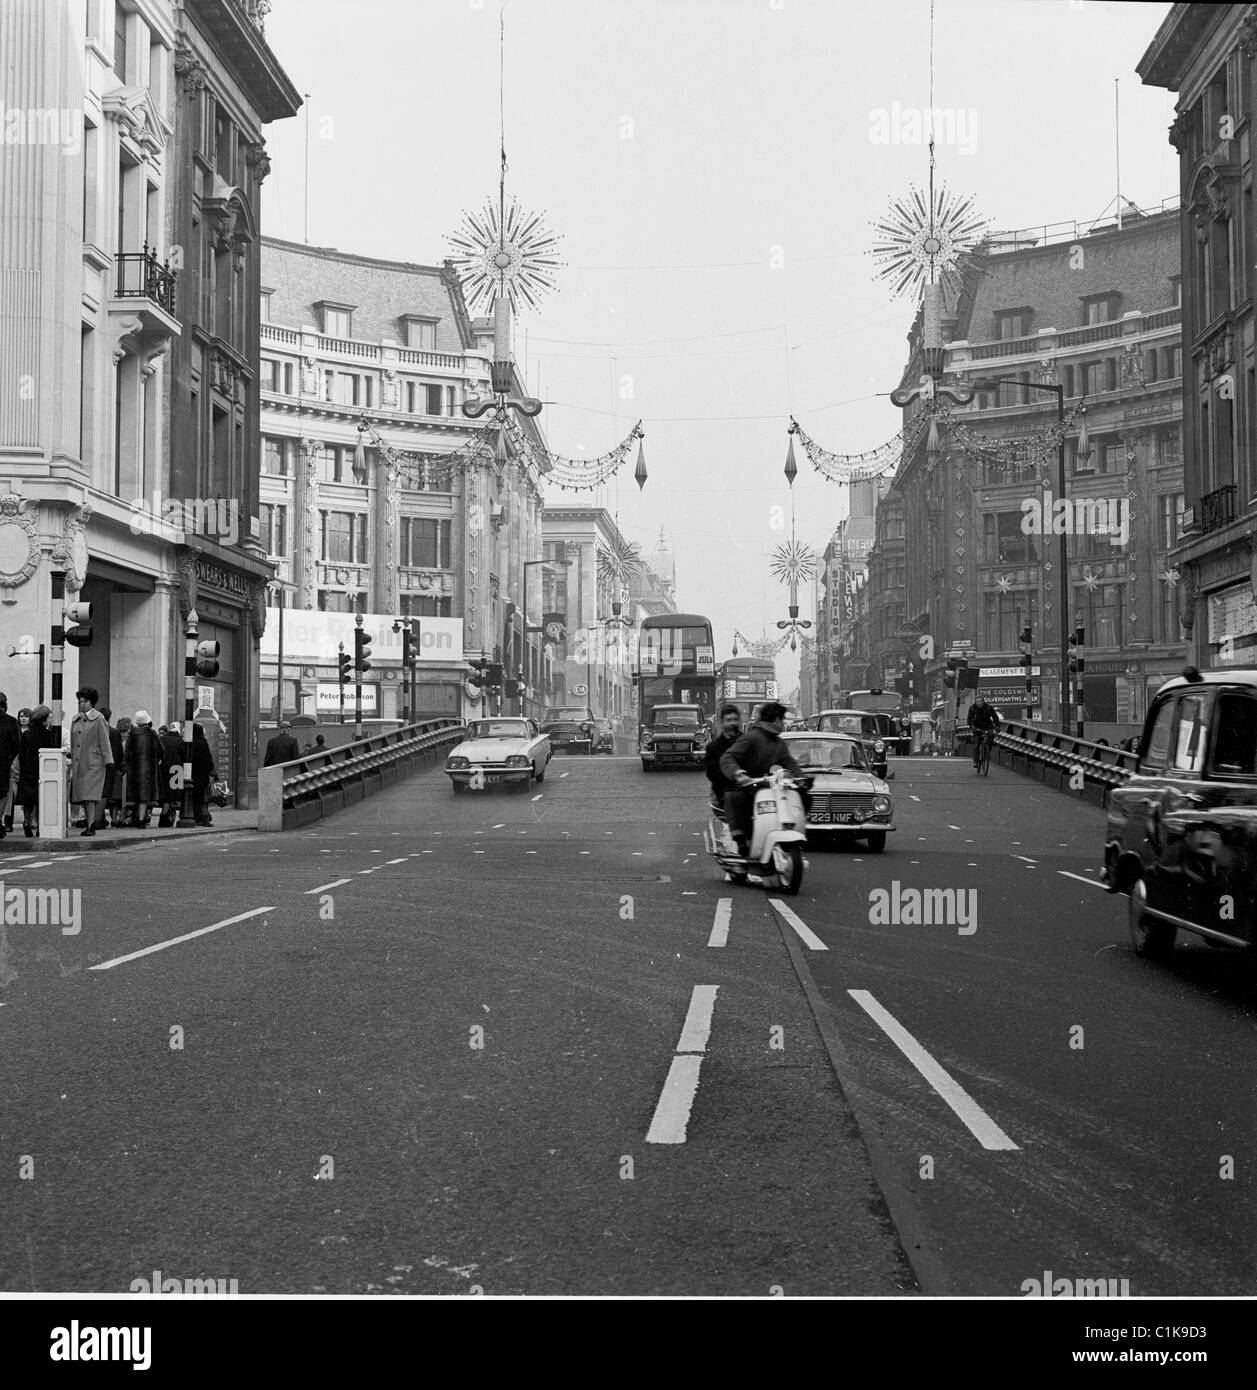 Années 1960. Londres. La circulation automobile historique traversant une rampe en acier temporaire à Oxford Circus, Oxford Street où se réunit Regent St. Banque D'Images